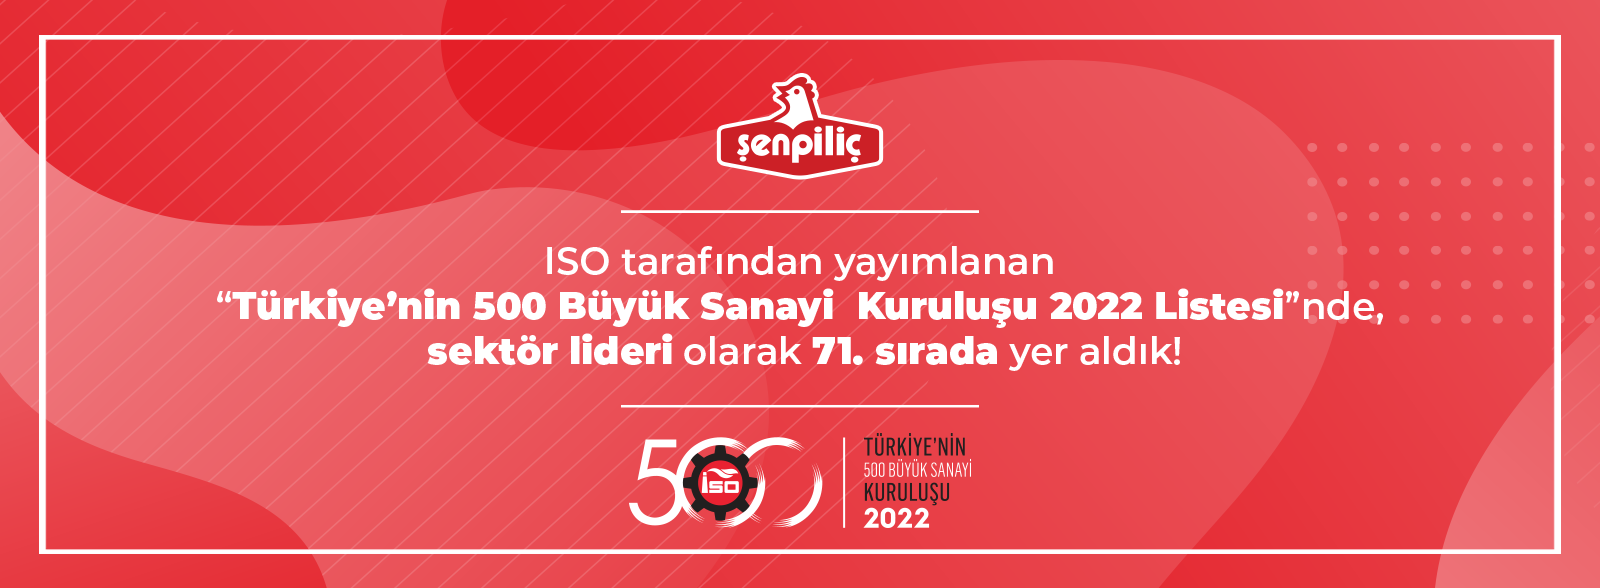 Şenpiliç'in yükselişi devam ediyor. Türkiye'nin en büyük  76. sanayi şirketi oldu.